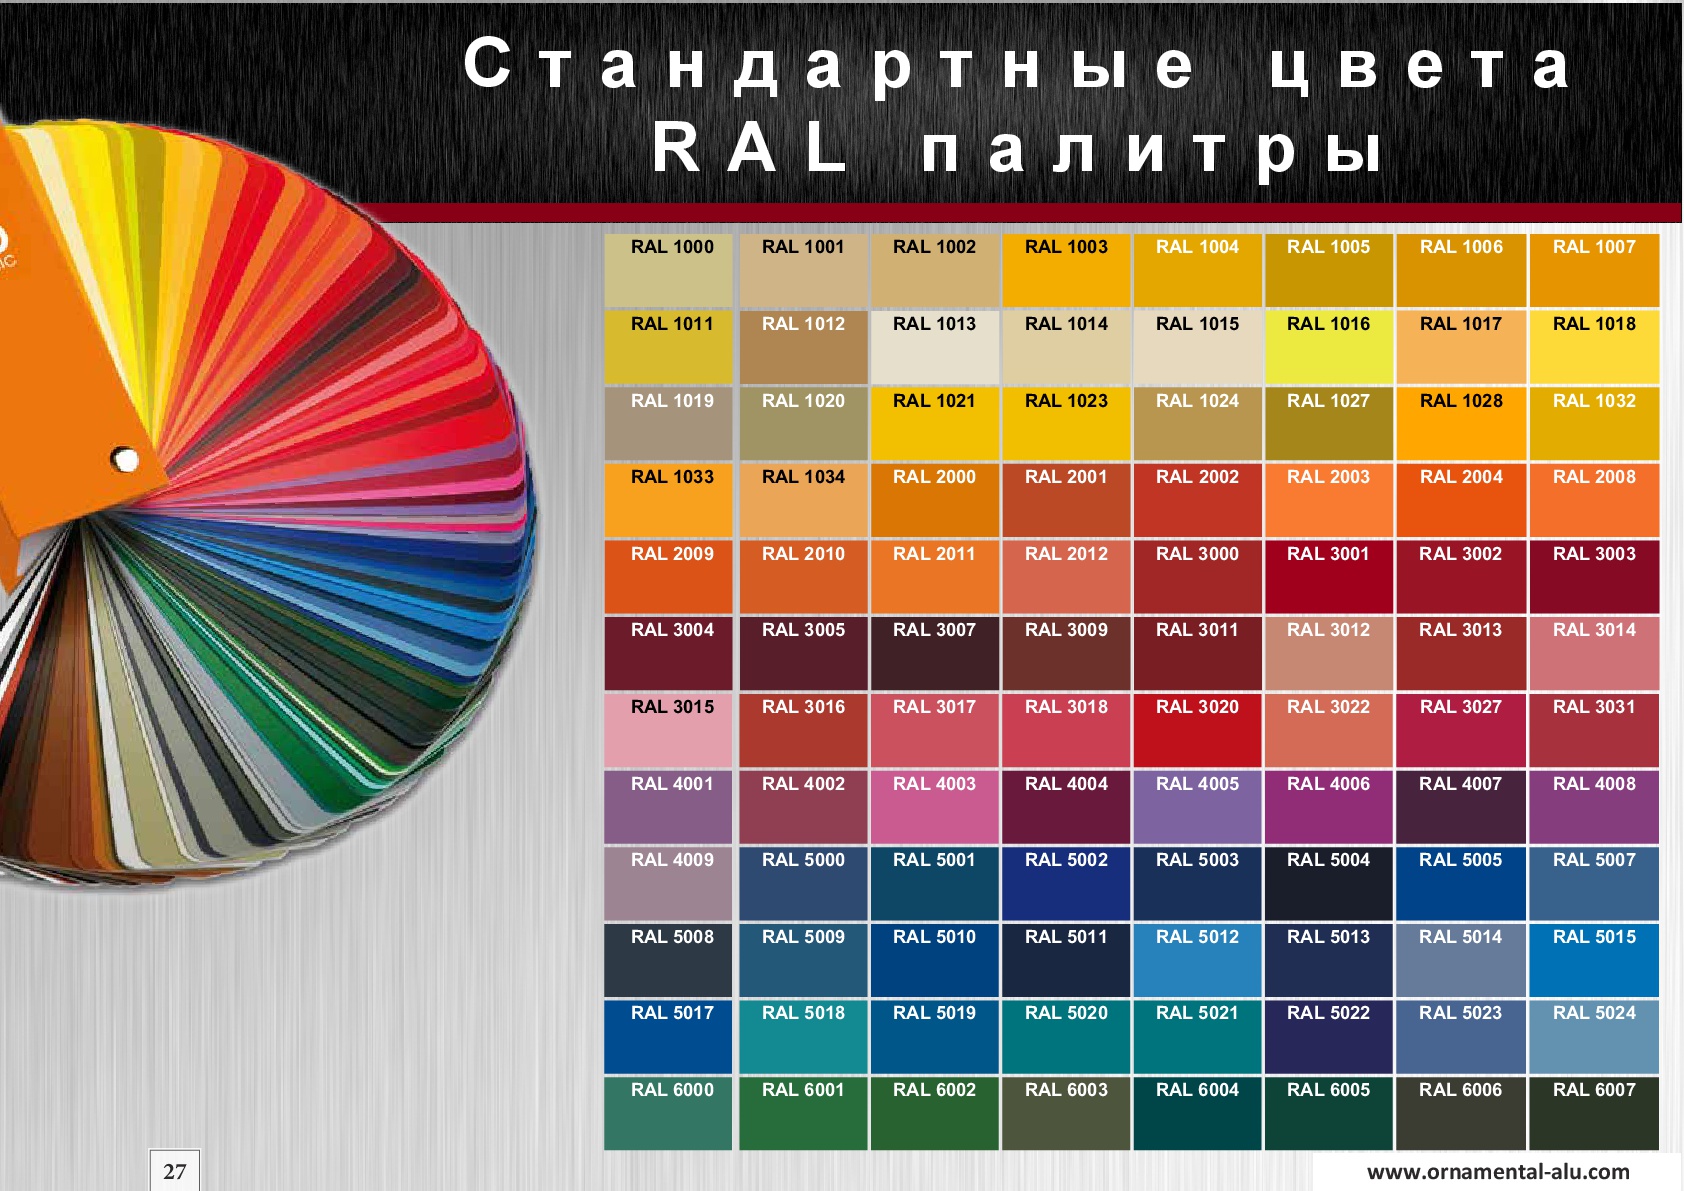 Каталоги рал с названиями. Таблица оттенков RAL. Оттенки рал палитра. Цветовая палитра RAL 7027. Цветовая раскладка рал.